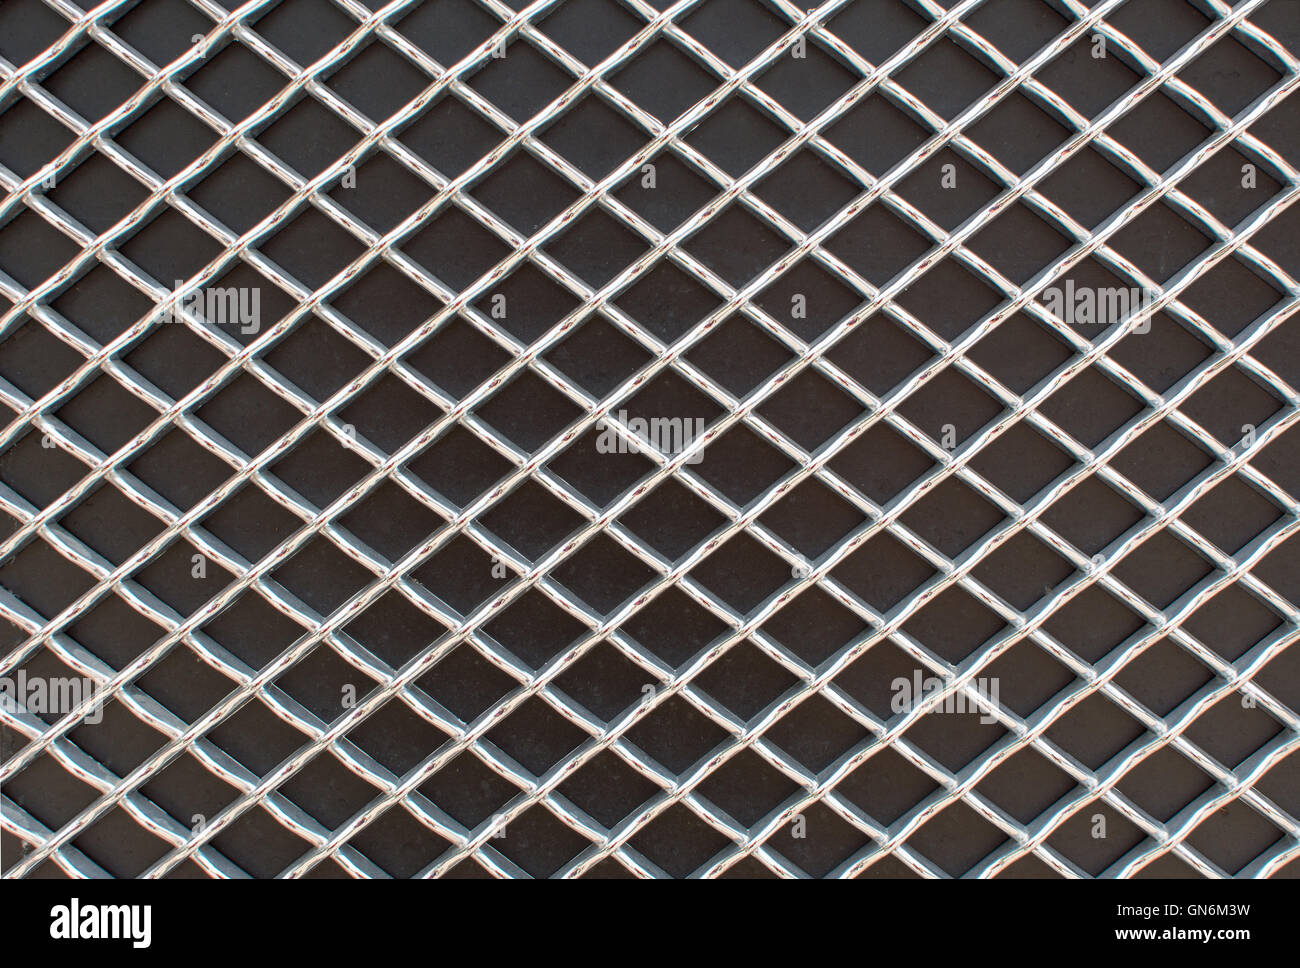 Fotografía de rhombus rejilla metálica patrón sobre superficie negra Foto de stock